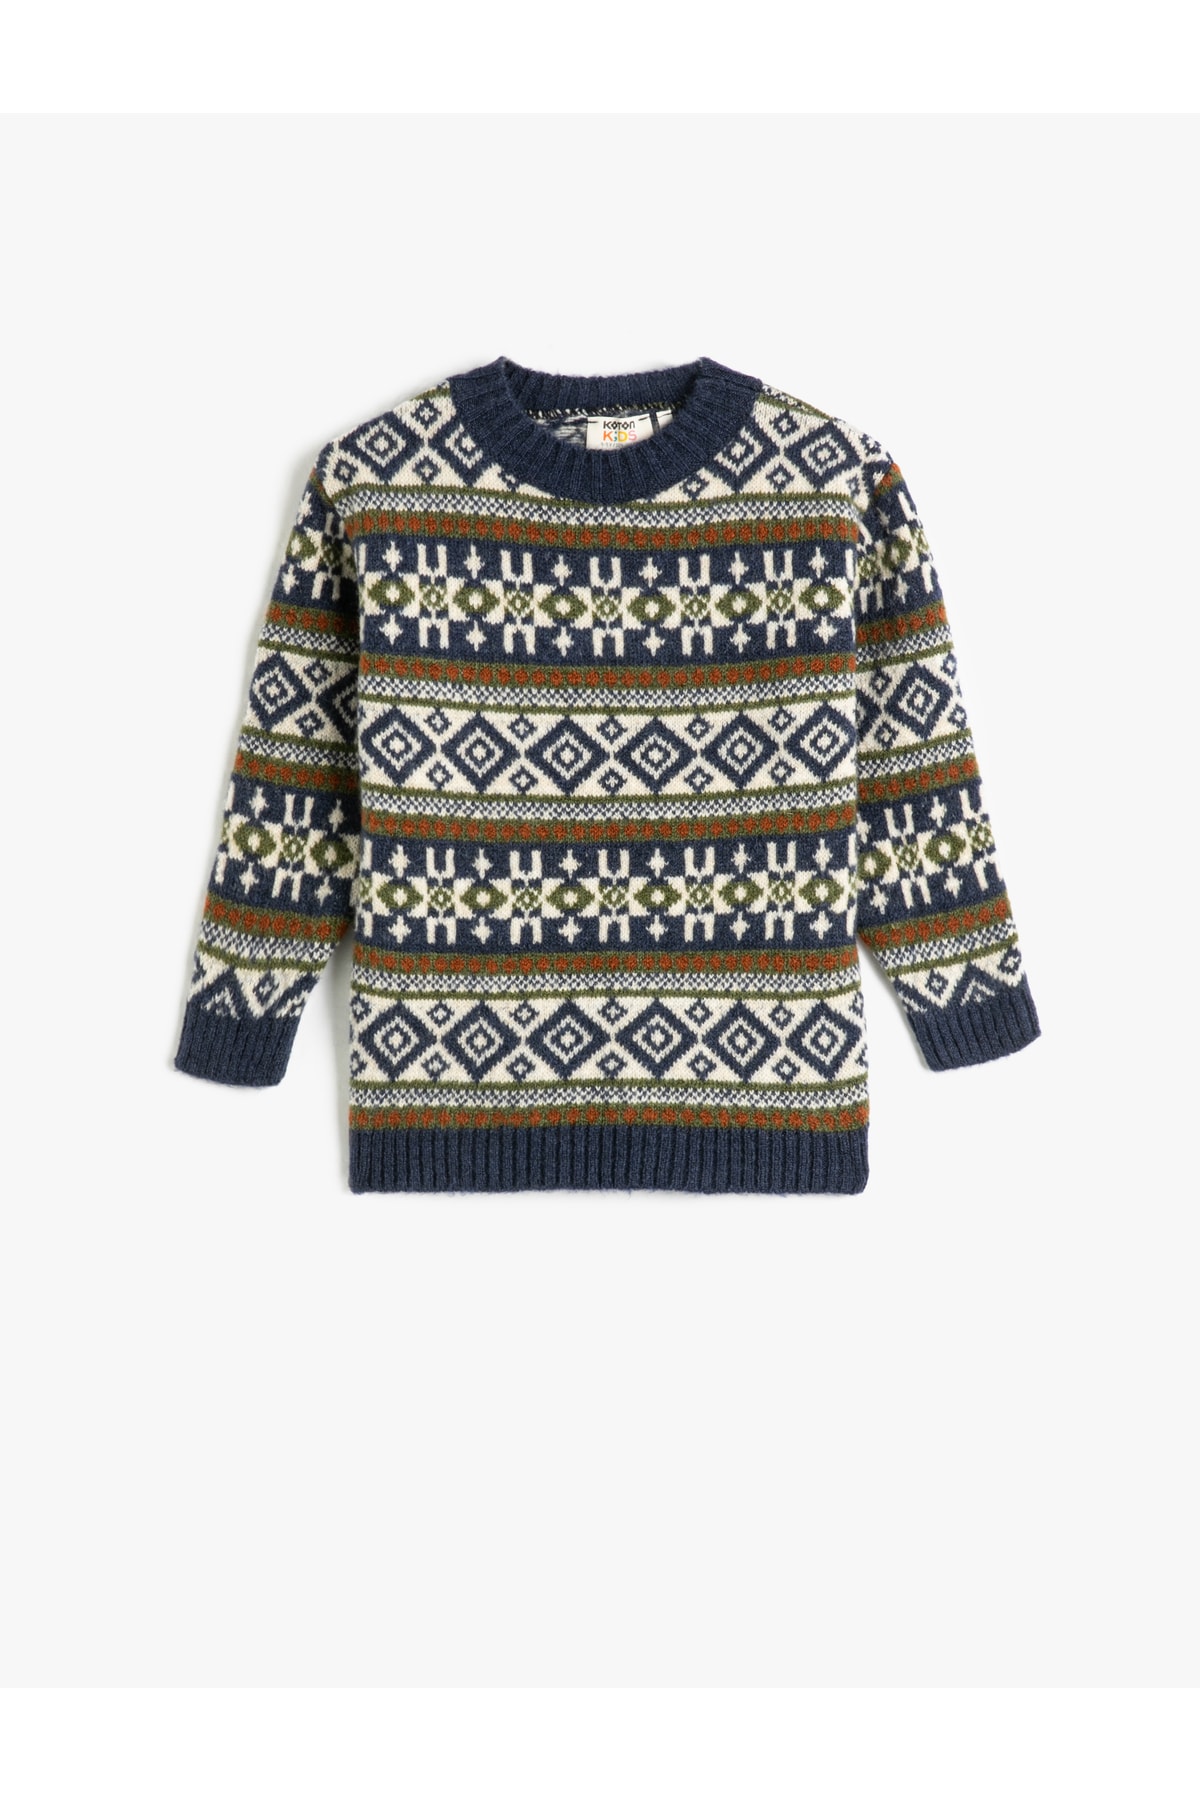 Levně Koton Sweater Knit Round Neck Long Sleeve Ethnic Patterned